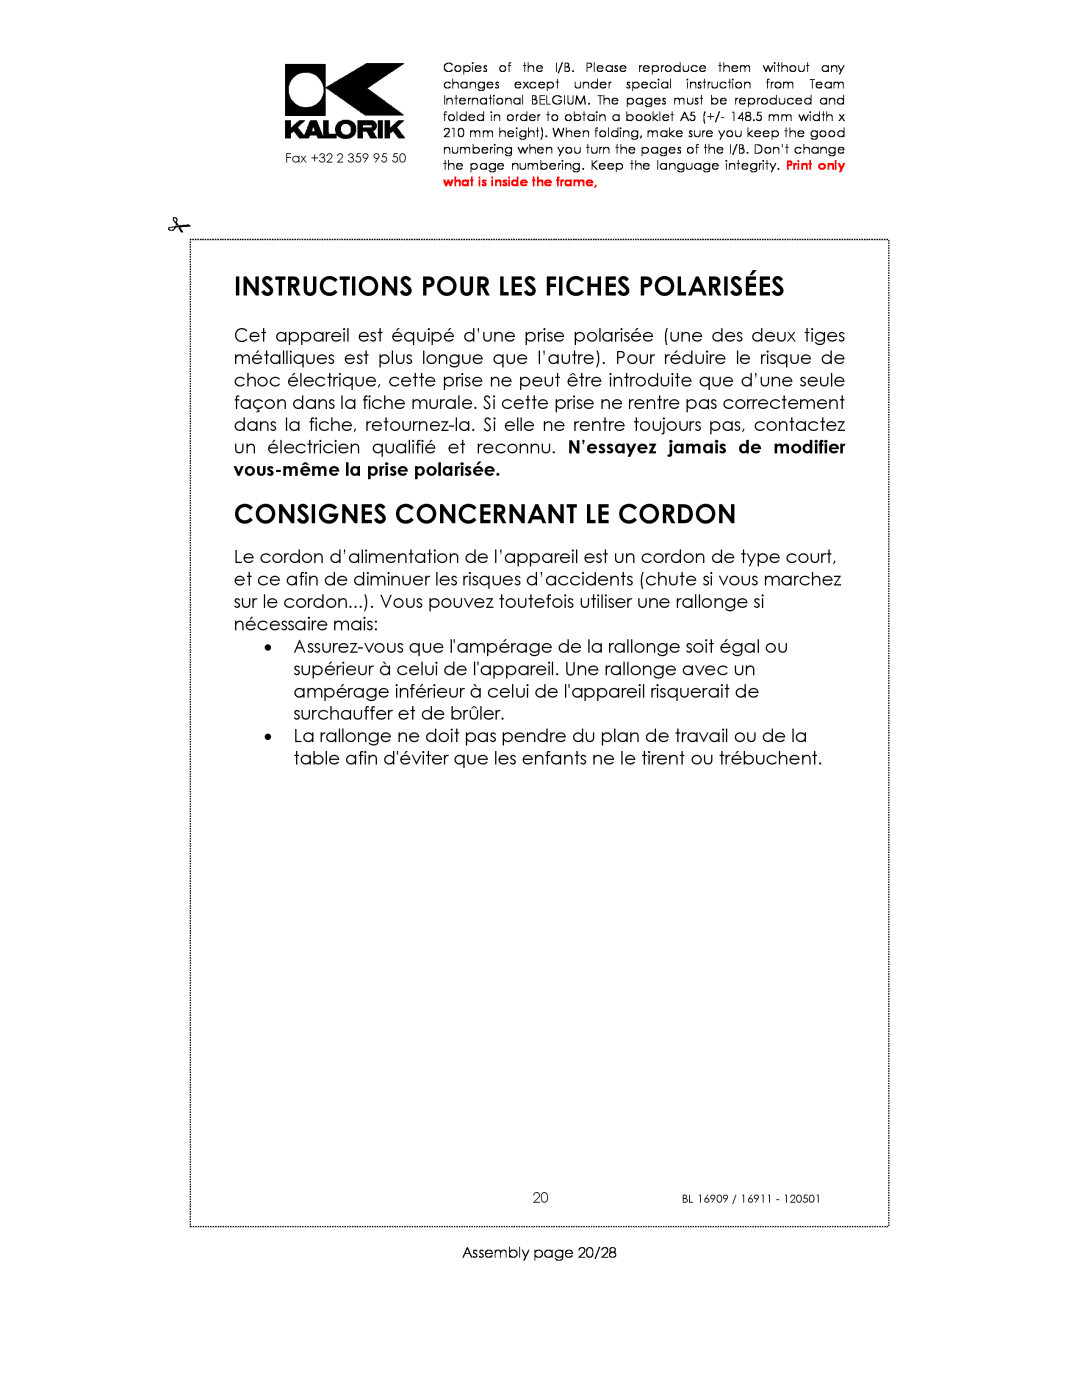 Kalorik 16911, usk bl 16909 Instructions Pour Les Fiches Polarisées, Consignes Concernant Le Cordon, Assembly page 20/28 